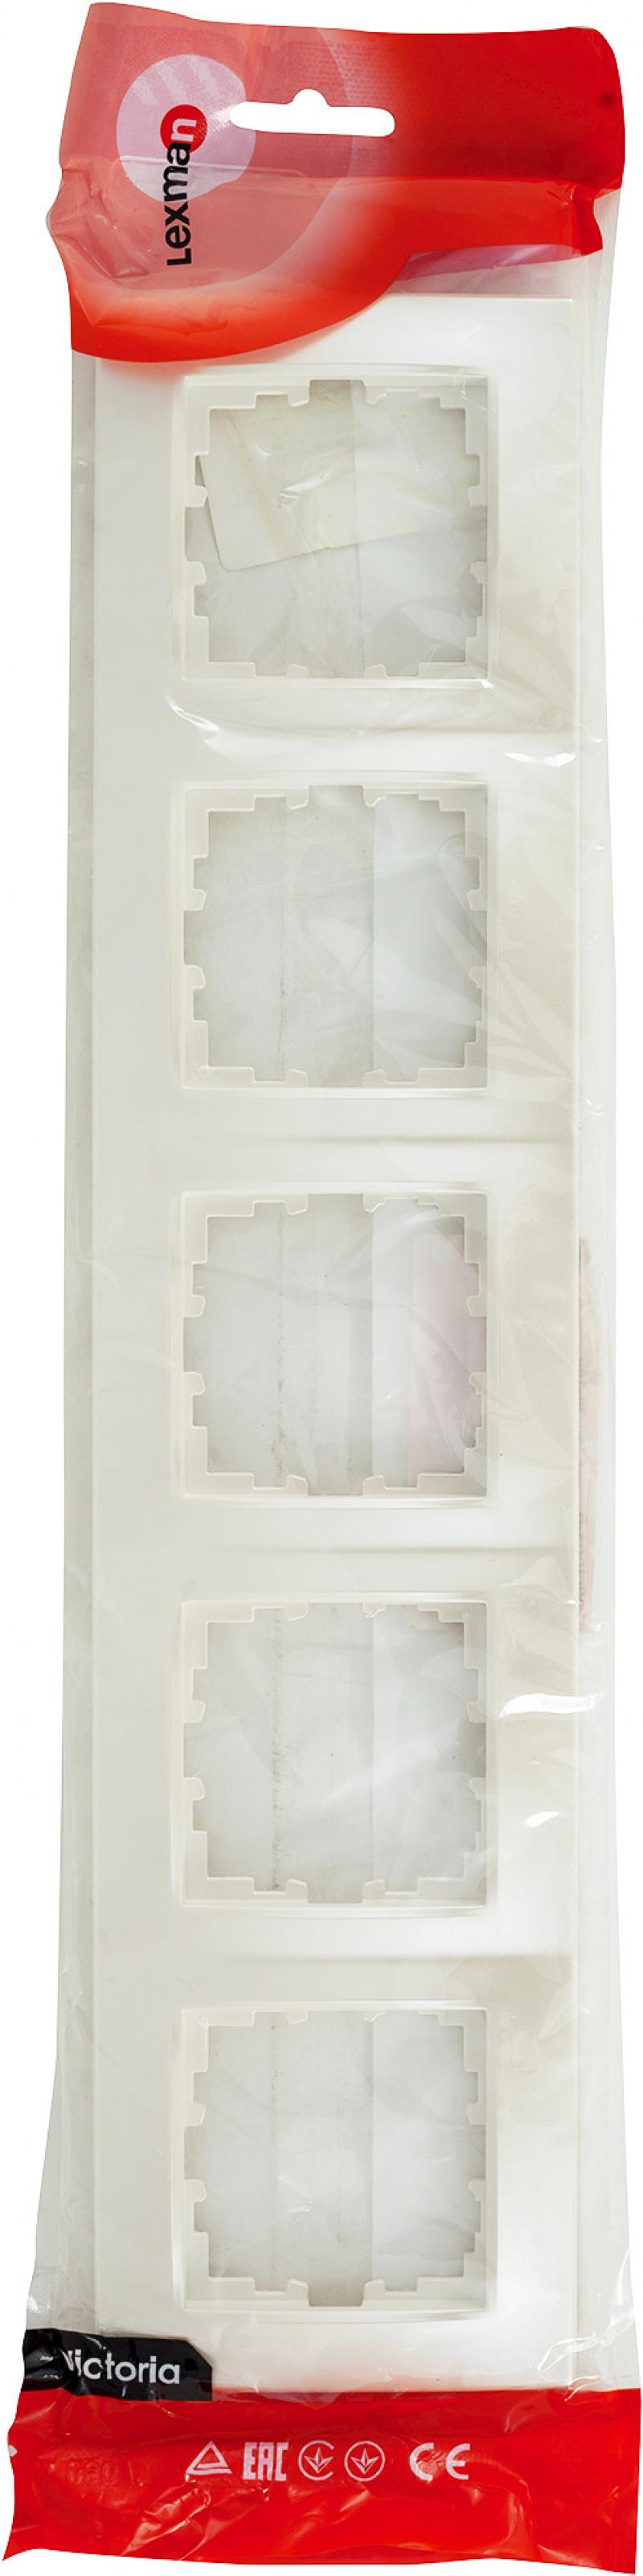 Рамка для розеток и выключателей Lexman Виктория сферическая 5 постов цвет жемчужно-белый матовый